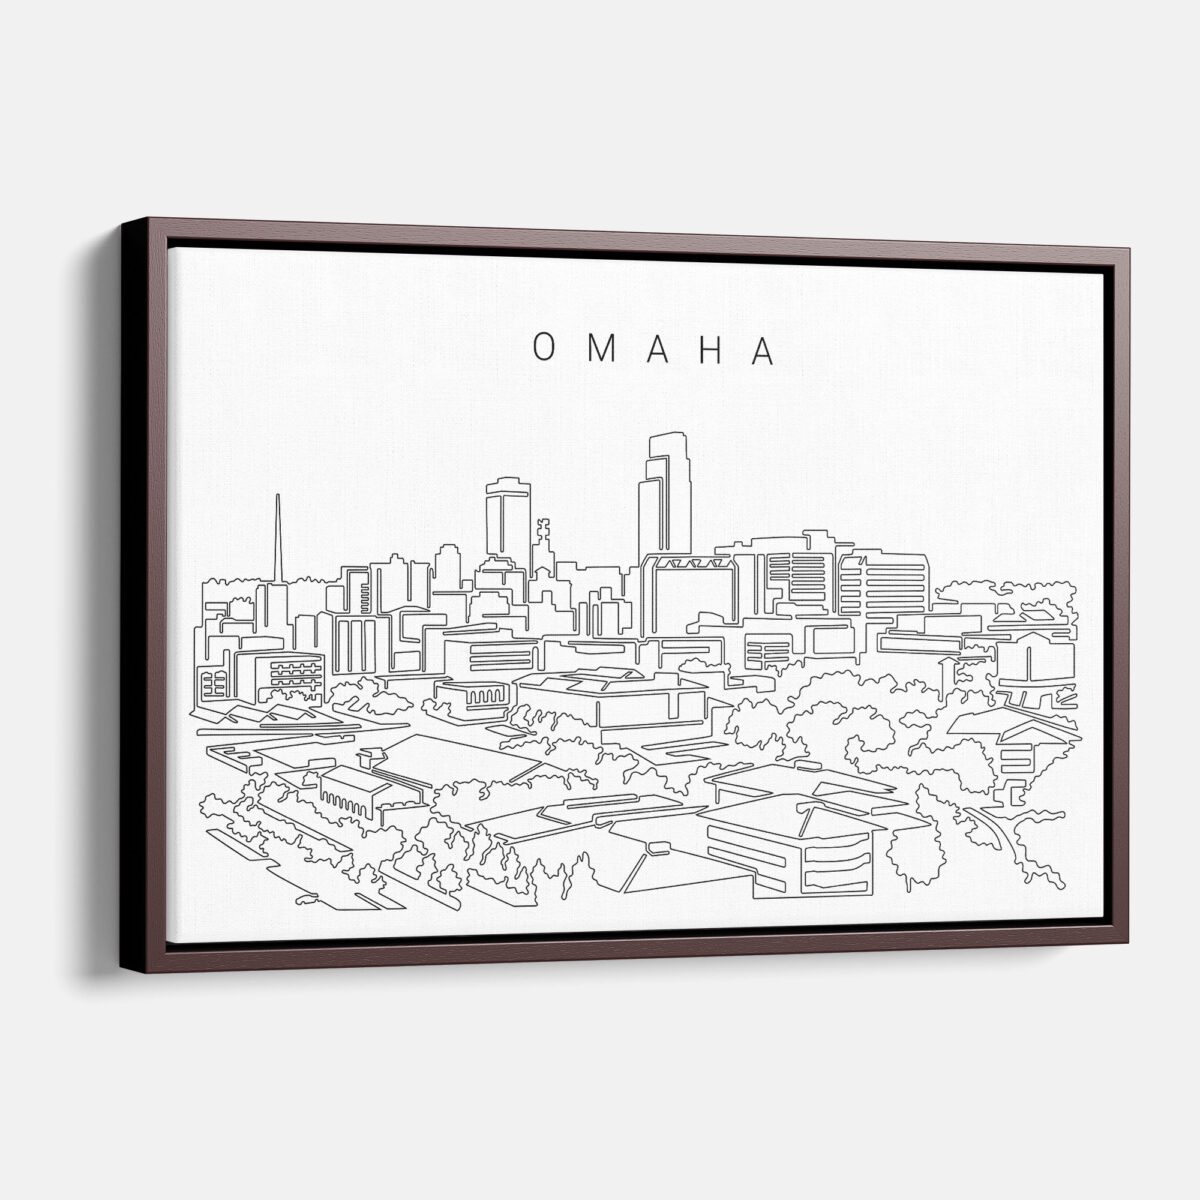 Framed Omaha Canvas Print - Main - Light